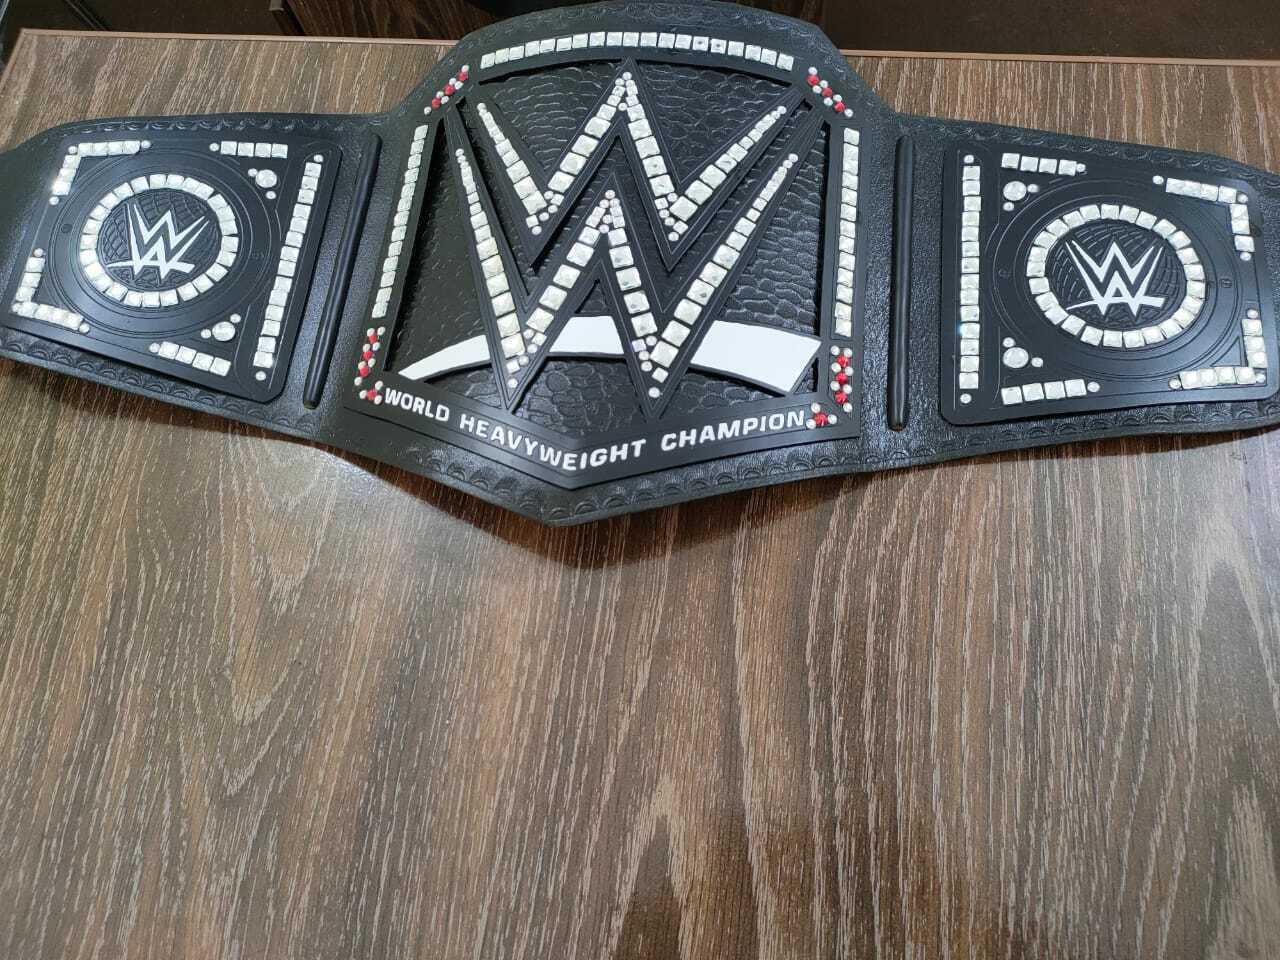 New WWE World Heavyweight Championship Belt